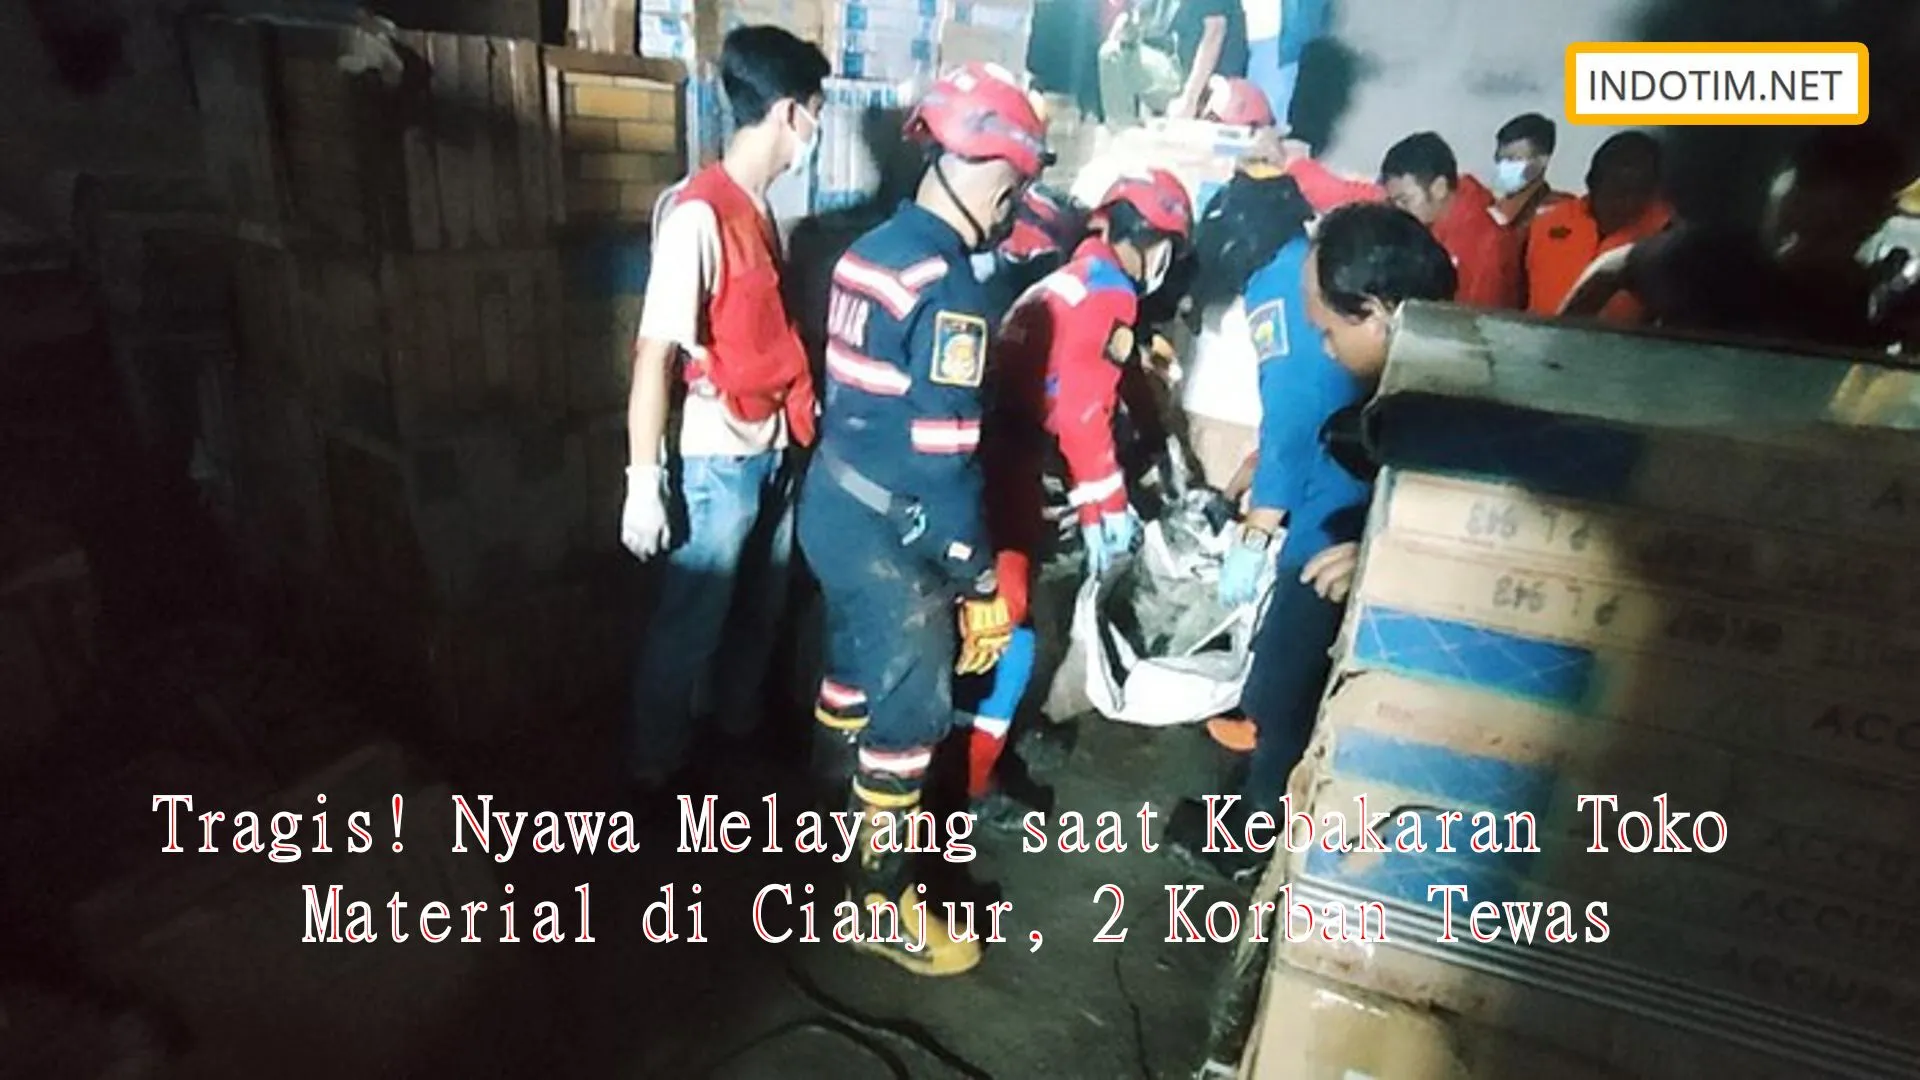 Tragis! Nyawa Melayang saat Kebakaran Toko Material di Cianjur, 2 Korban Tewas